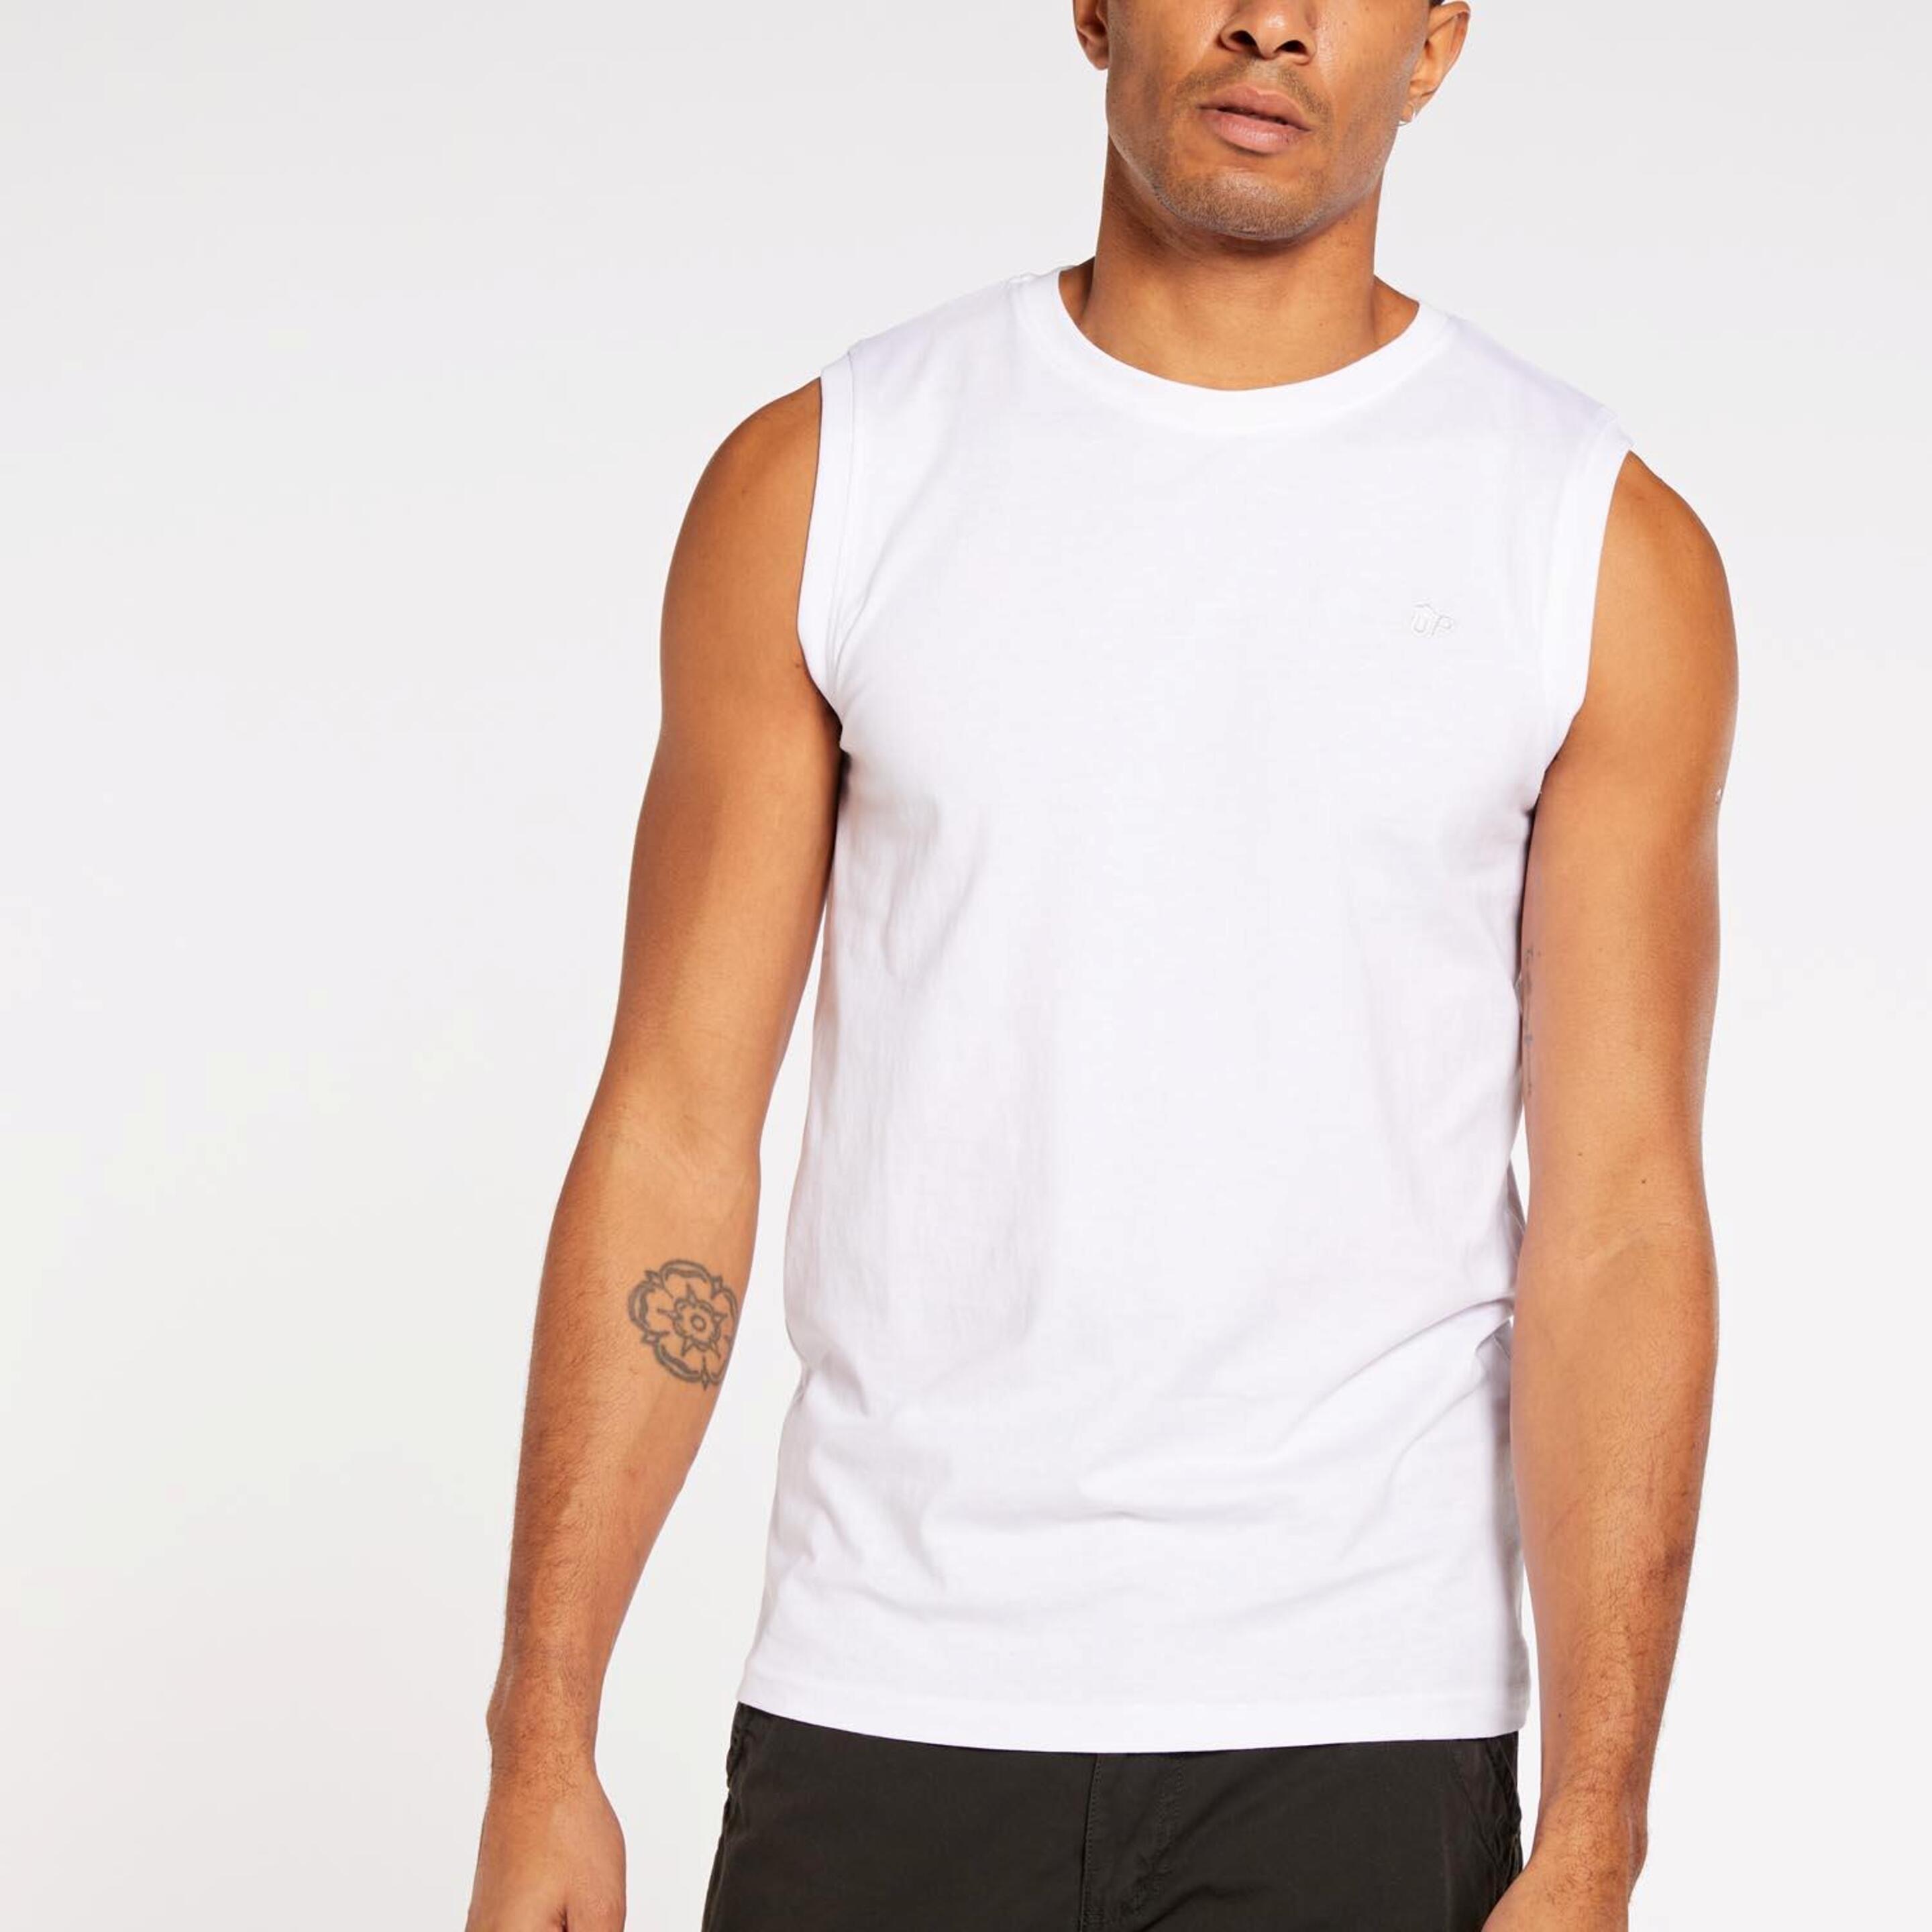 Up Basic - blanco - Camiseta Sin Mangas Hombre